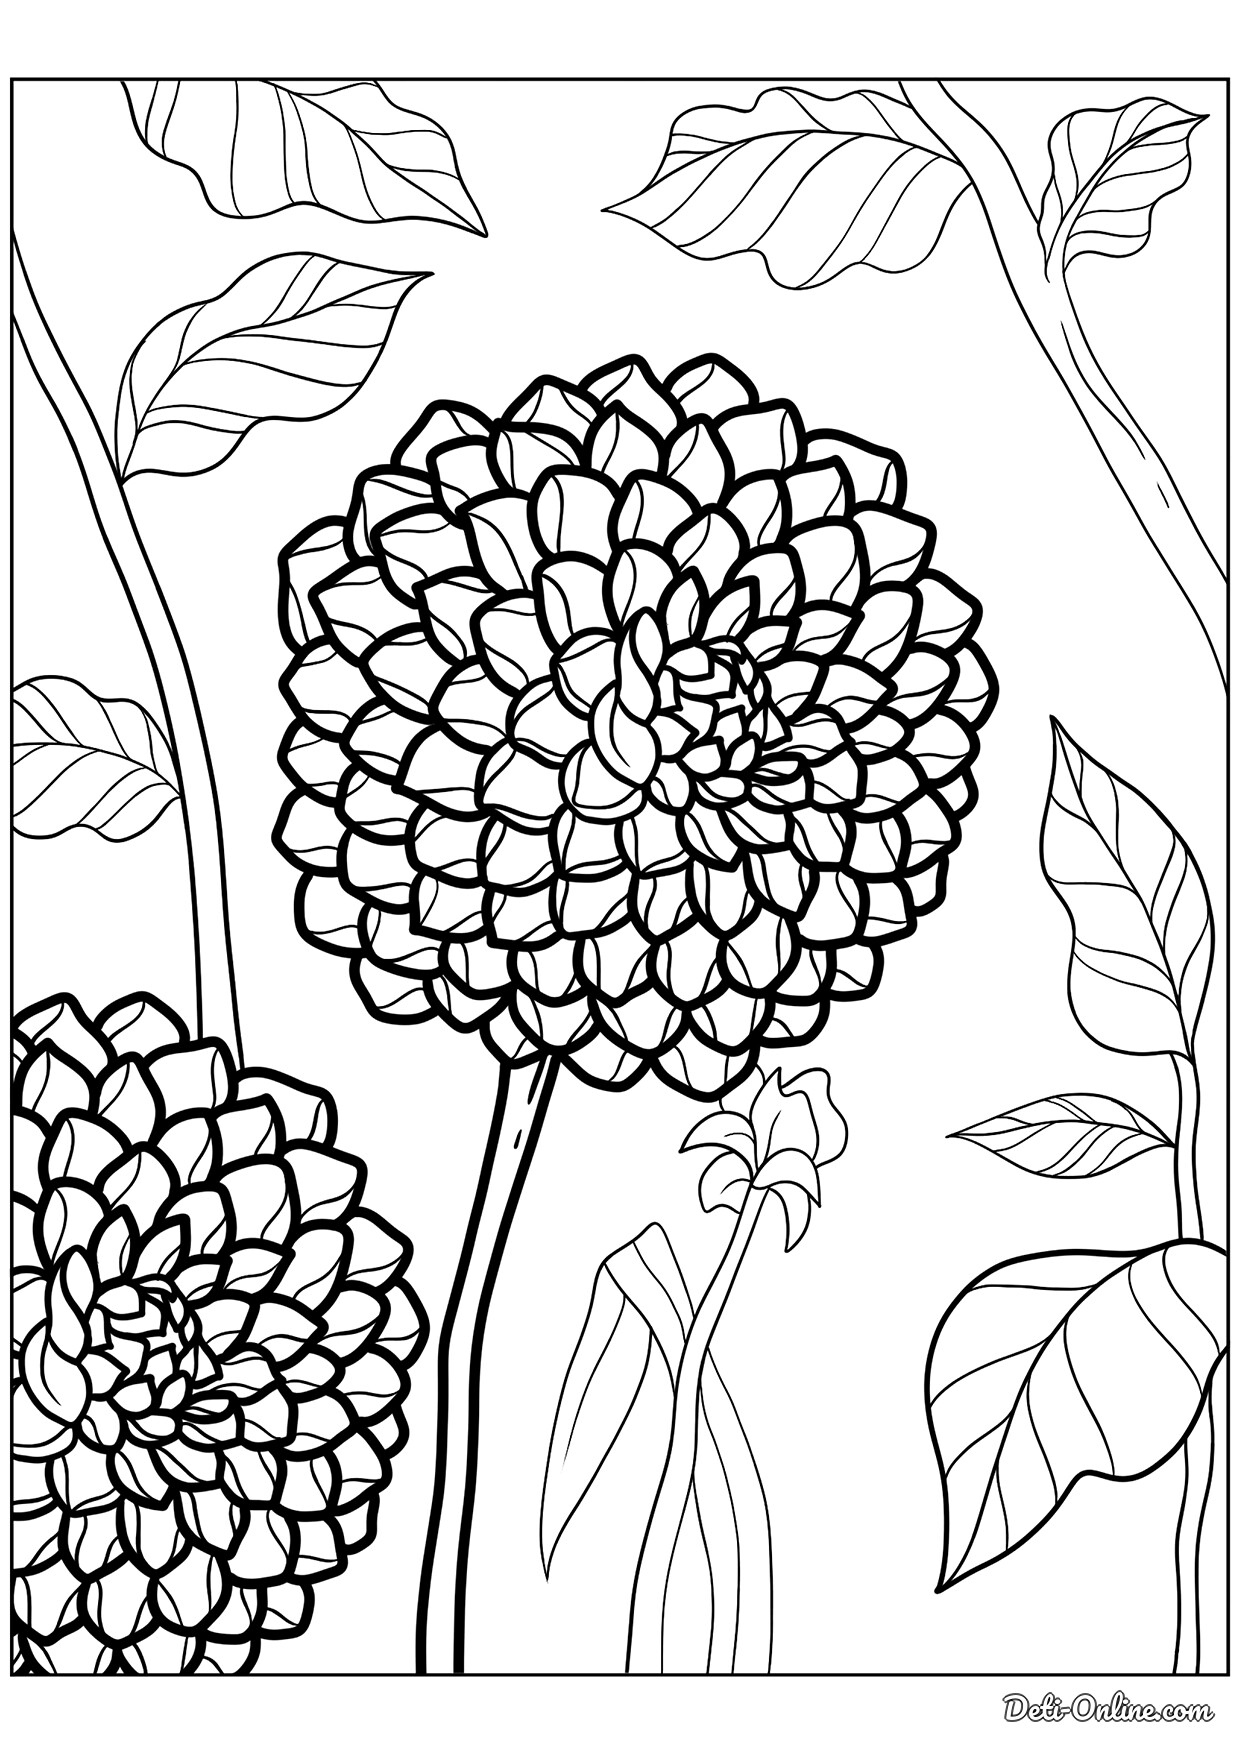 Раскраска Цветок георгина | распечатать раскраски для детей